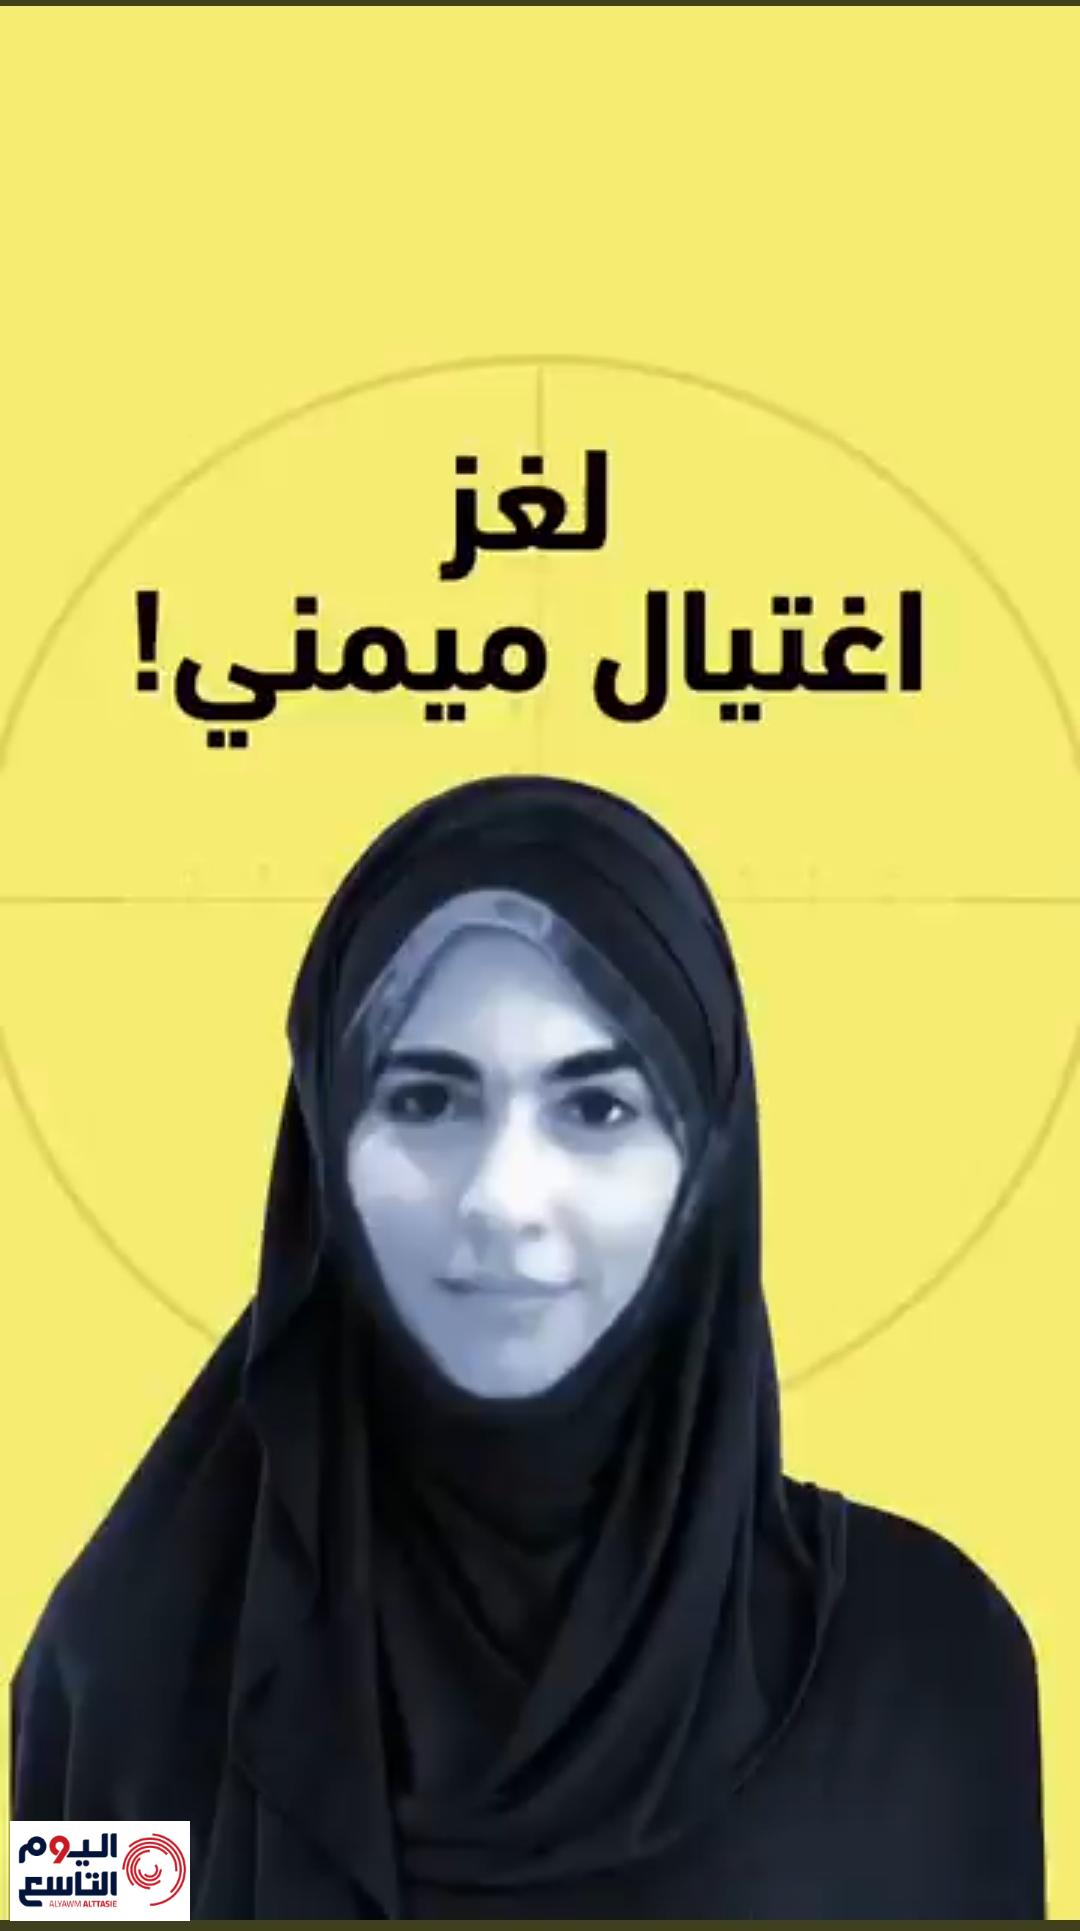 اغتيال الدكتورة السعودية سامية عبد الرحيم ميمني - مشروع الحصن ll للدفاع عن  الإسلام والحوار مع الأديان والرد على الشبهات المثارة ll